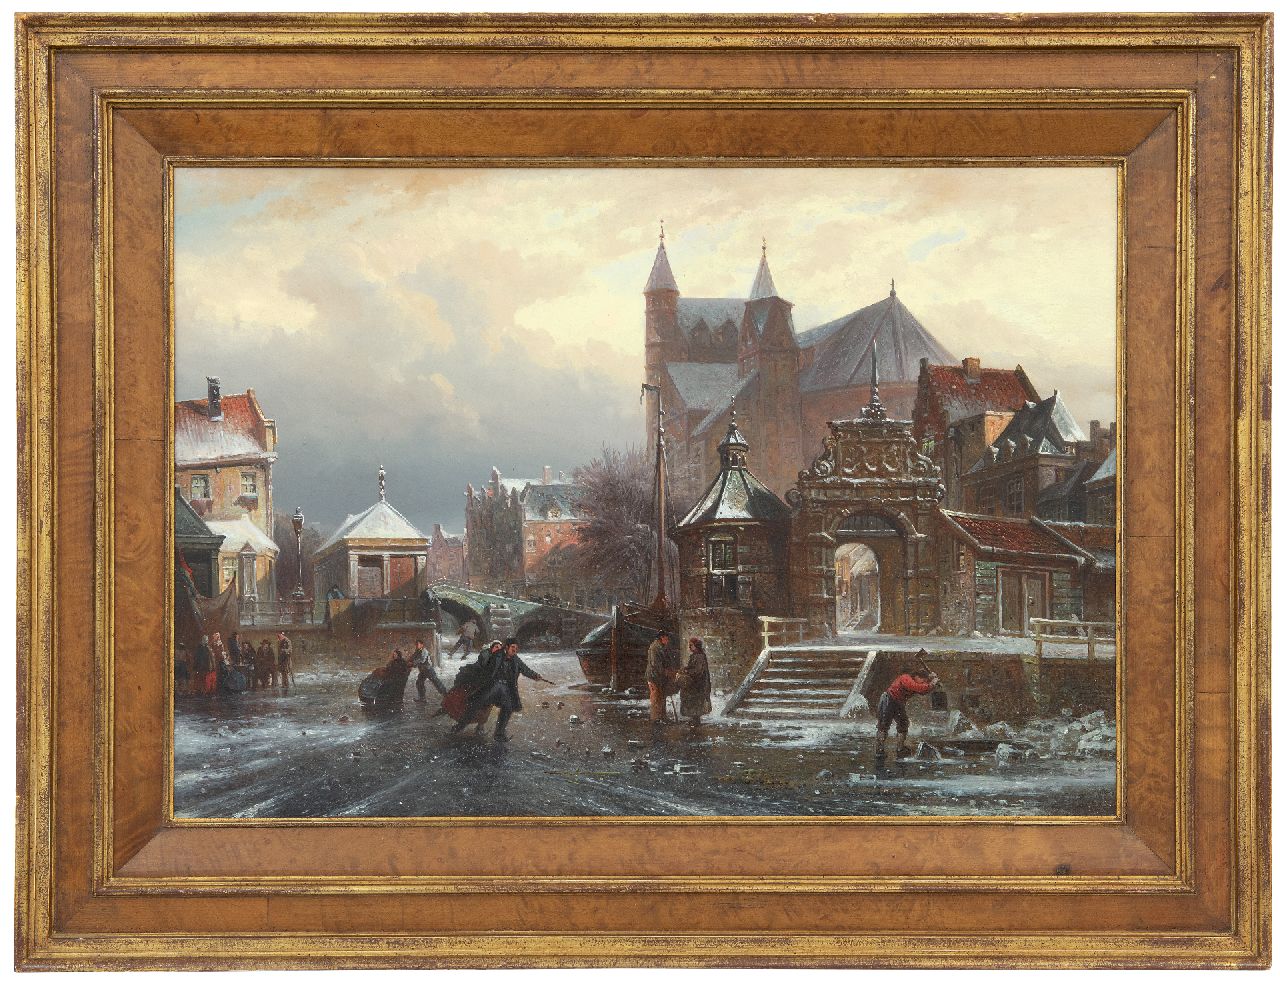 Bommel E.P. van | Elias Pieter van Bommel | Schilderijen te koop aangeboden | Schaatspret op een stadsgracht, olieverf op paneel 36,7 x 54,4 cm, gesigneerd rechtsonder en gedateerd '72